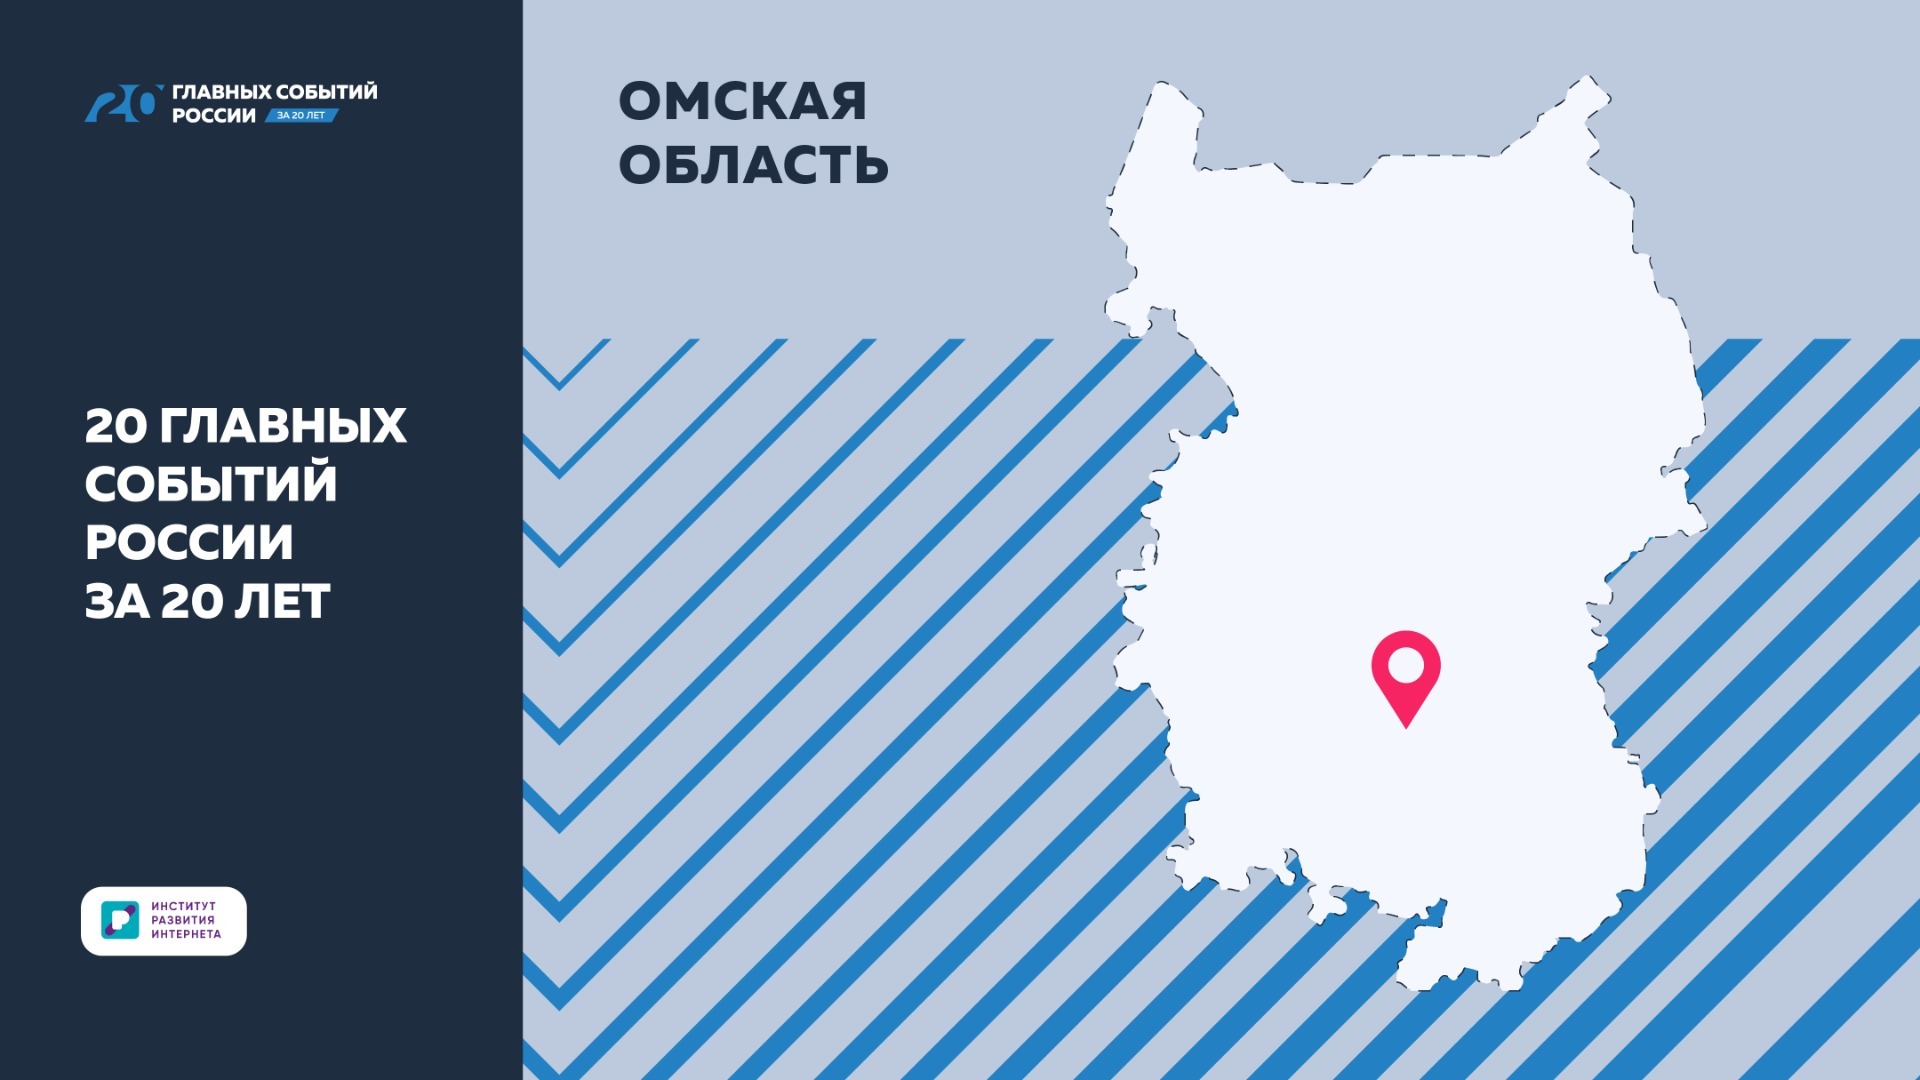 ИРИ: Омская область славится своими достопримечательностями